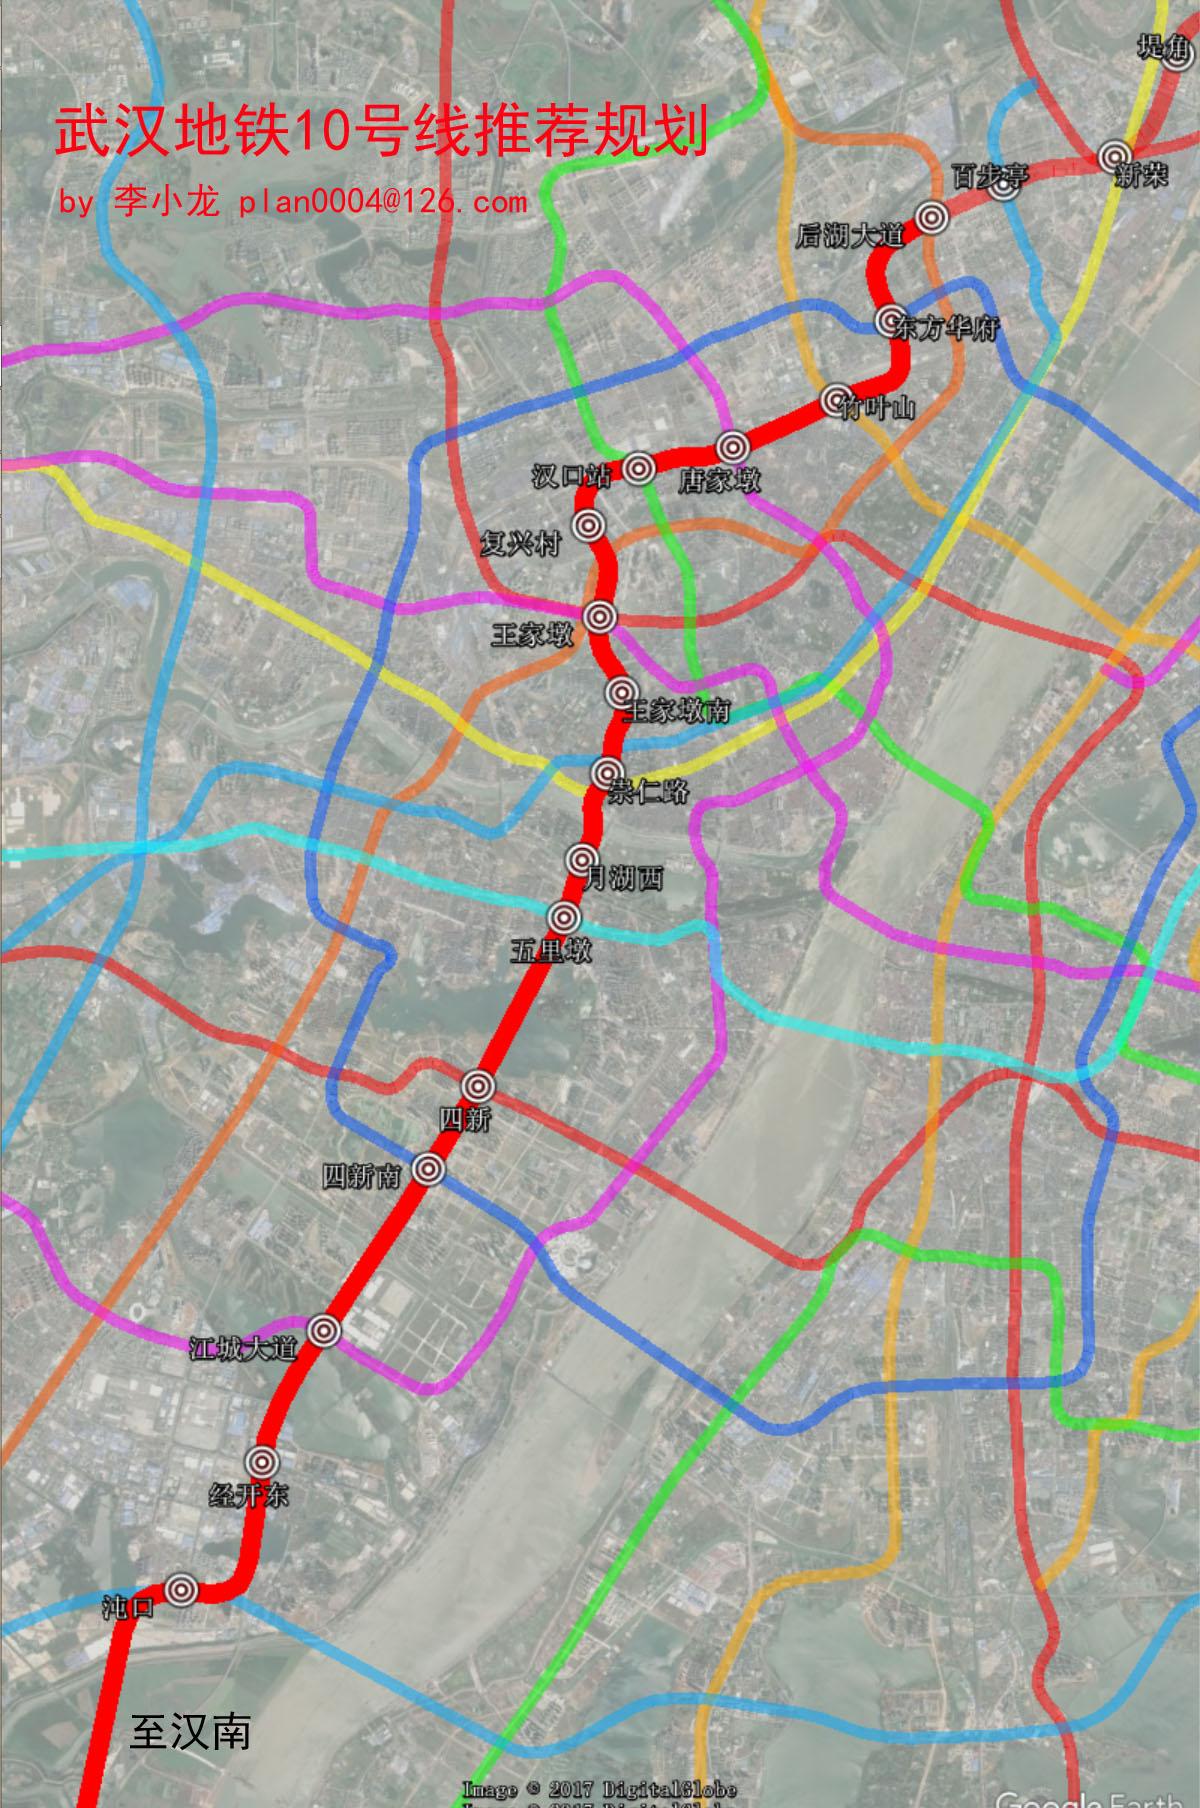 武汉地铁10号线(李小龙版本)站点设置及若干问题说明